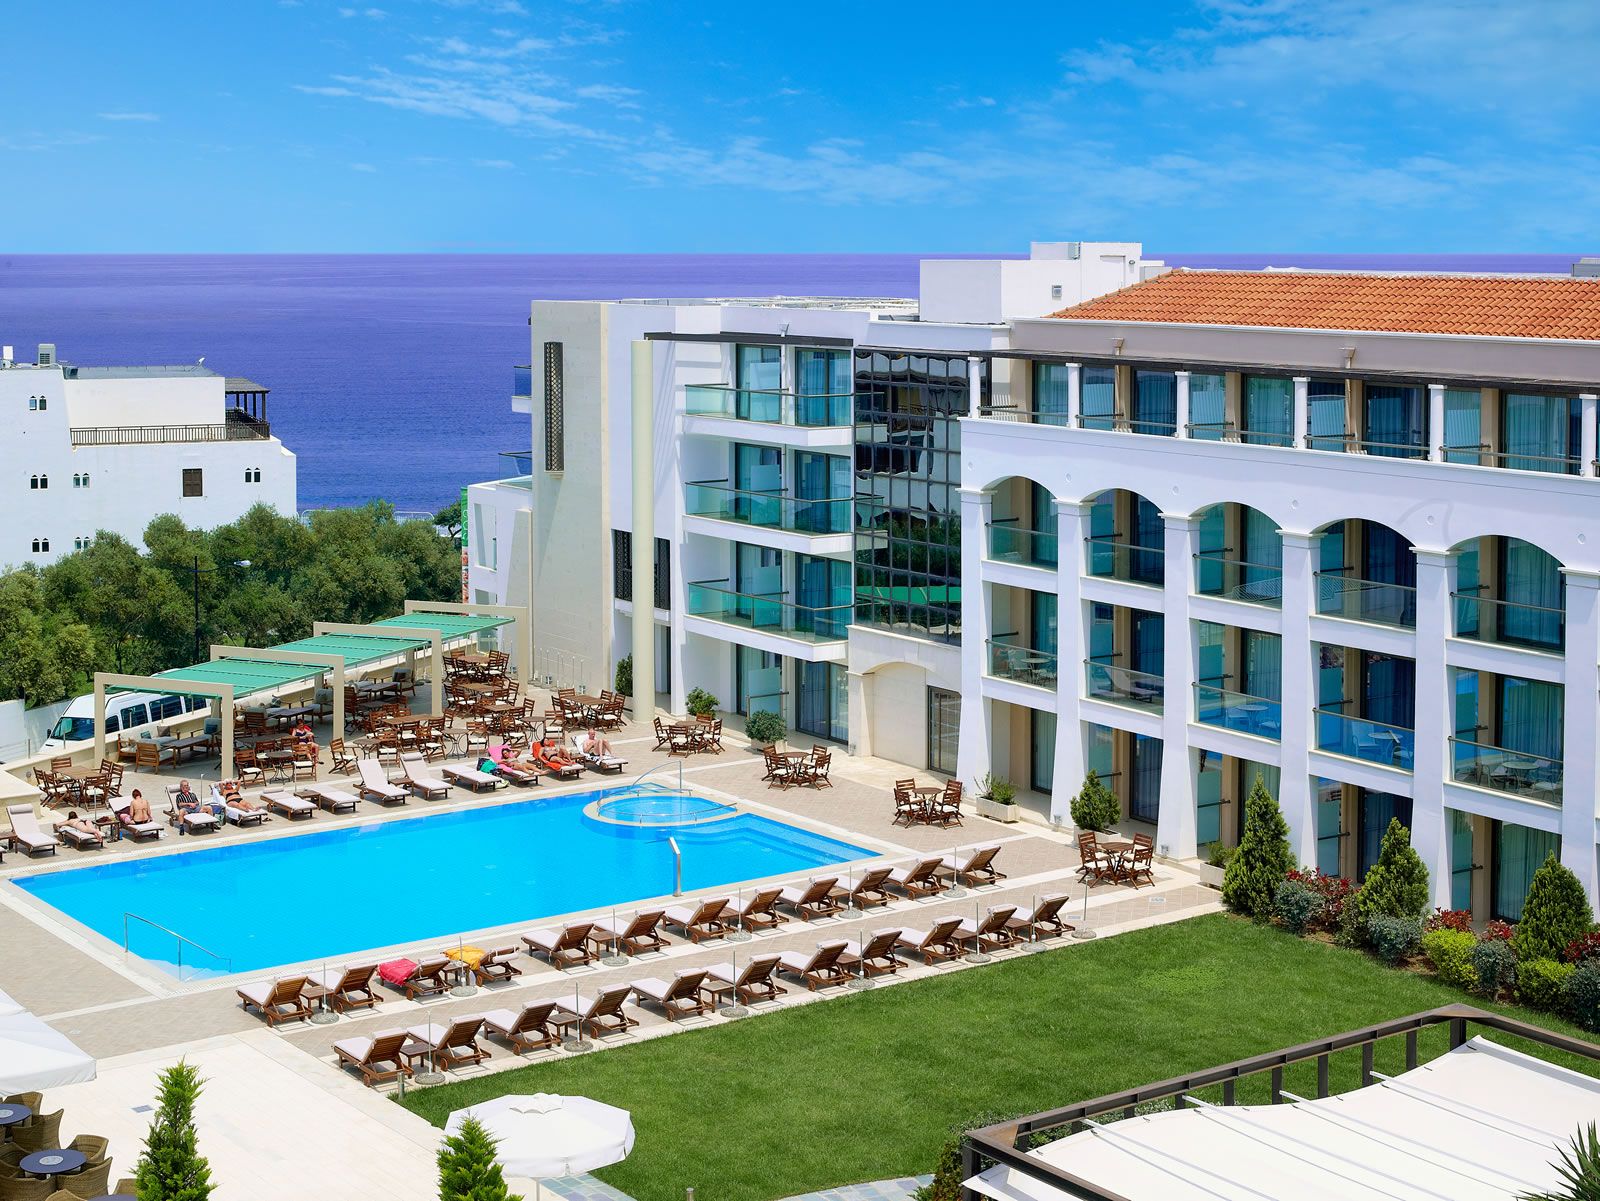 5* Albatros Spa Resort Hotel - Χερσόνησος, Κρήτη ✦ 2 Ημέρες (1 Διανυκτέρευση) ✦ 2 άτομα ✦ 2 ✦ 29/04/2022 έως 17/10/2022 ✦ Μπροστά στη θάλασσα!